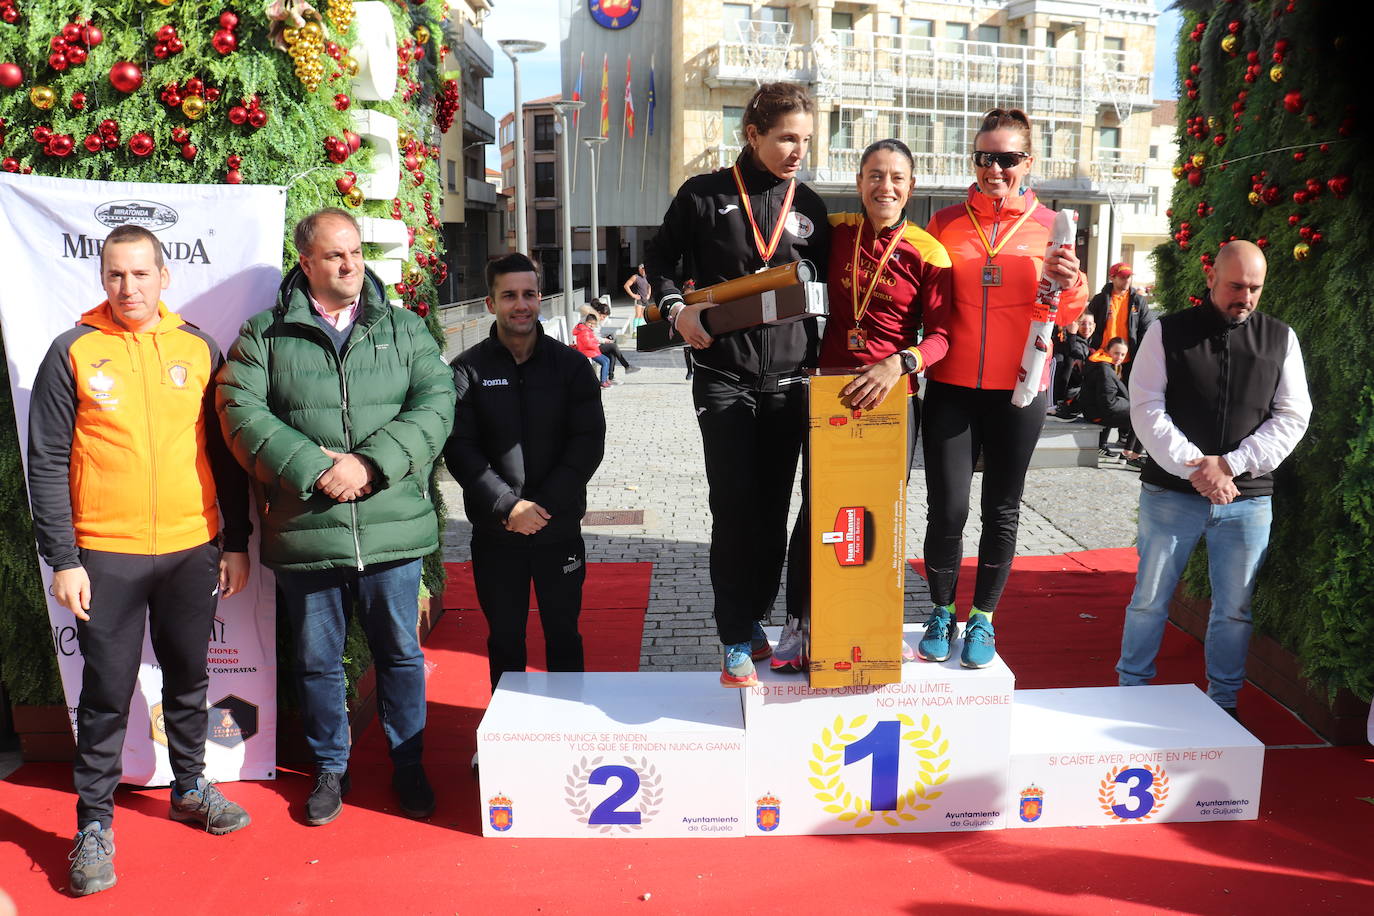 GALERÍA: Javier Montero y Verónica Sánchez repiten podio en el XI Jamón veloz de Guijuelo